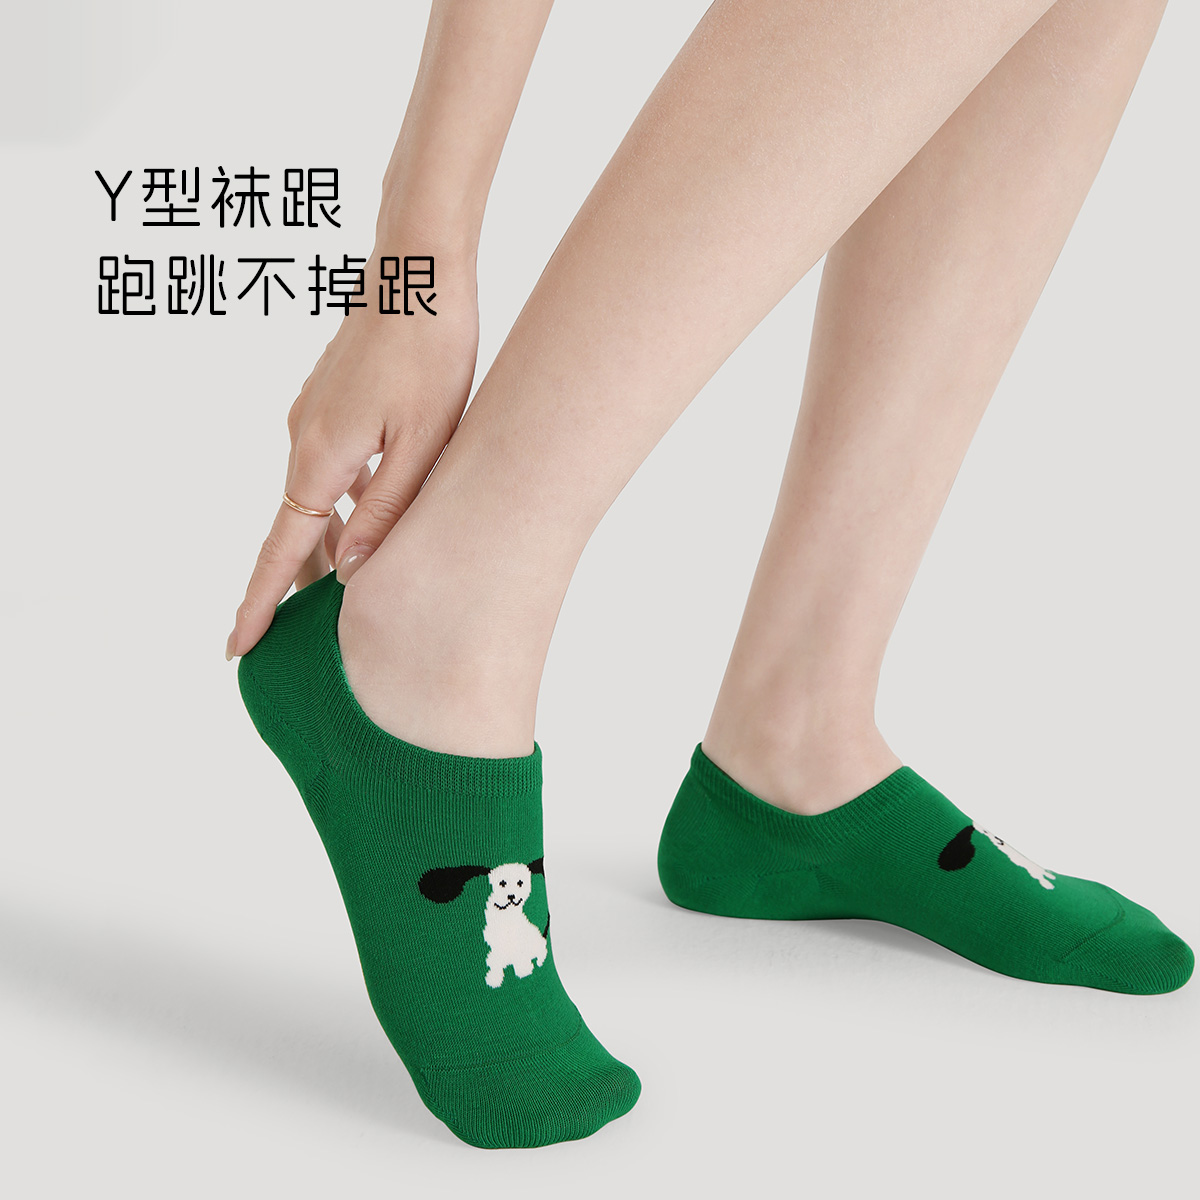 文艺复兴女式夏季袜子纯棉女袜短款韩国可爱彩色船袜女生夏天薄款 - 图1